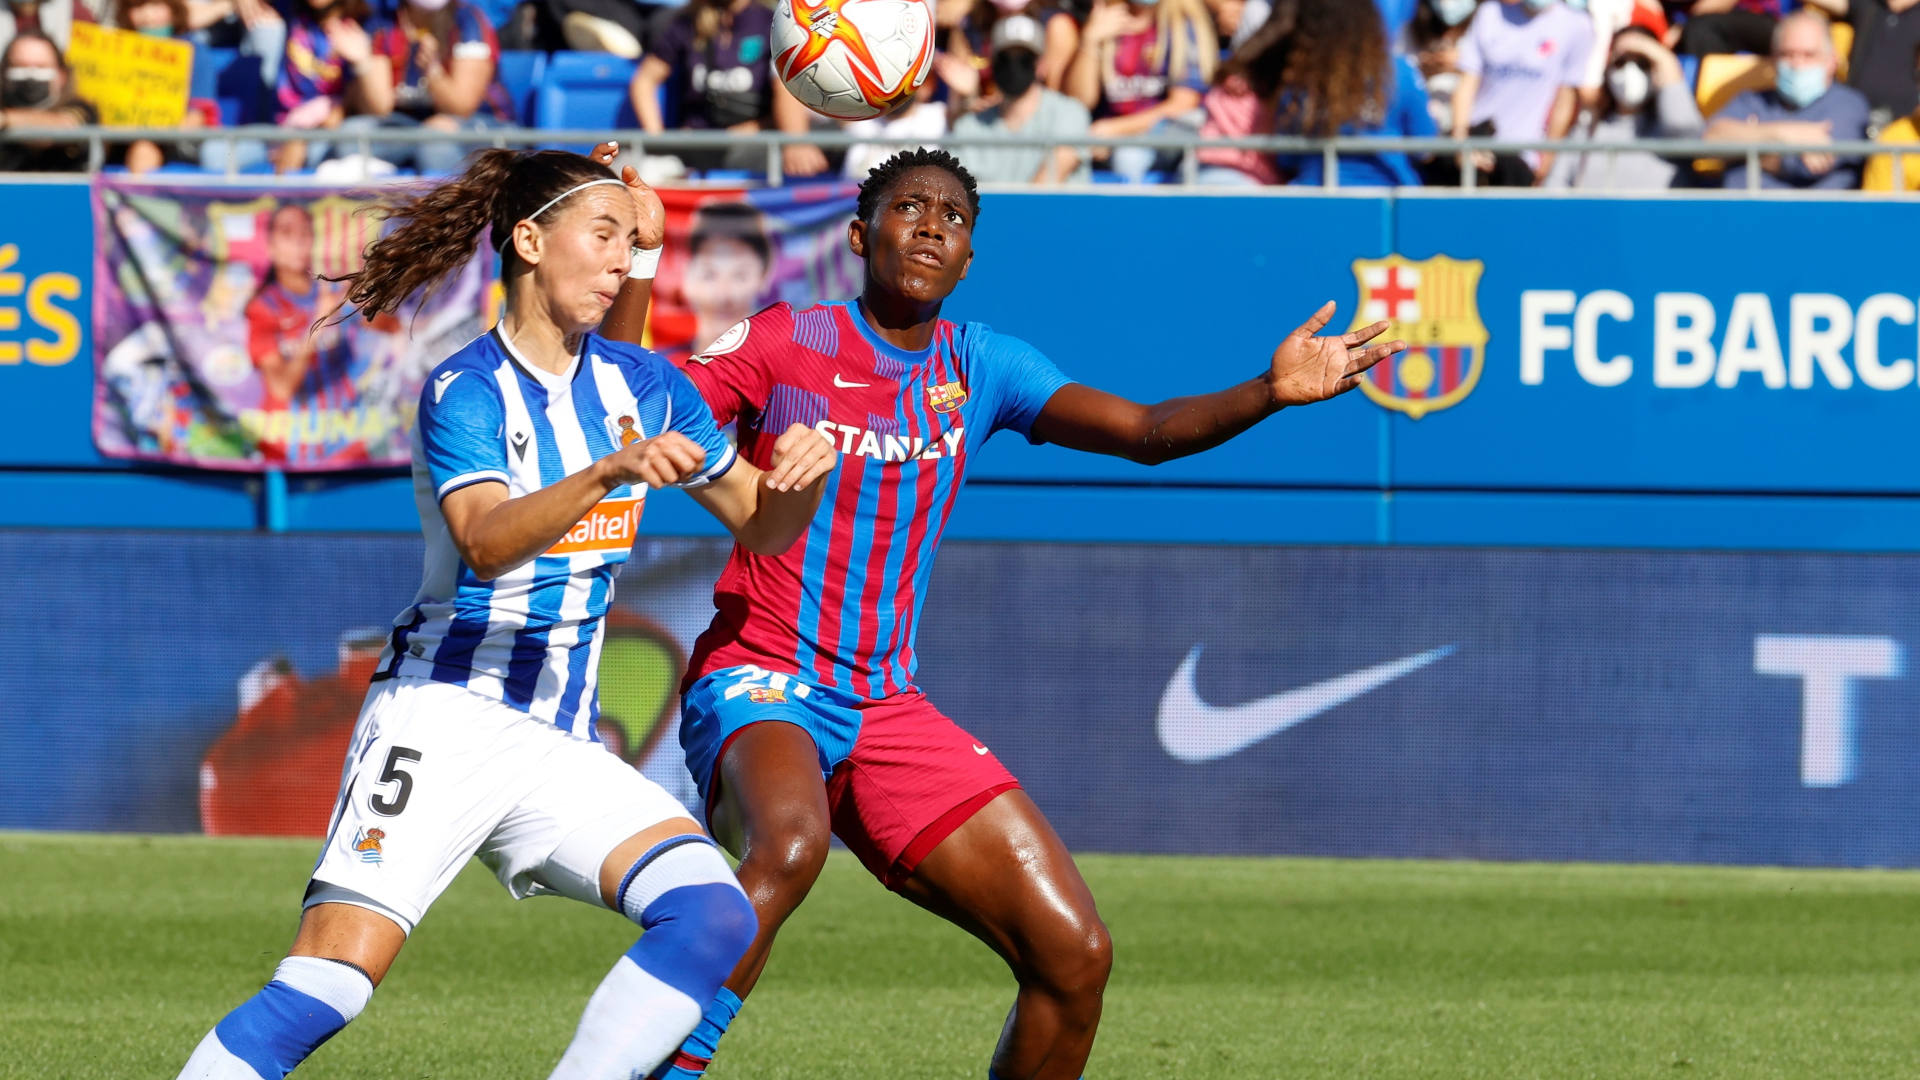 Partidos de fútbol club barcelona femenino contra real sociedad